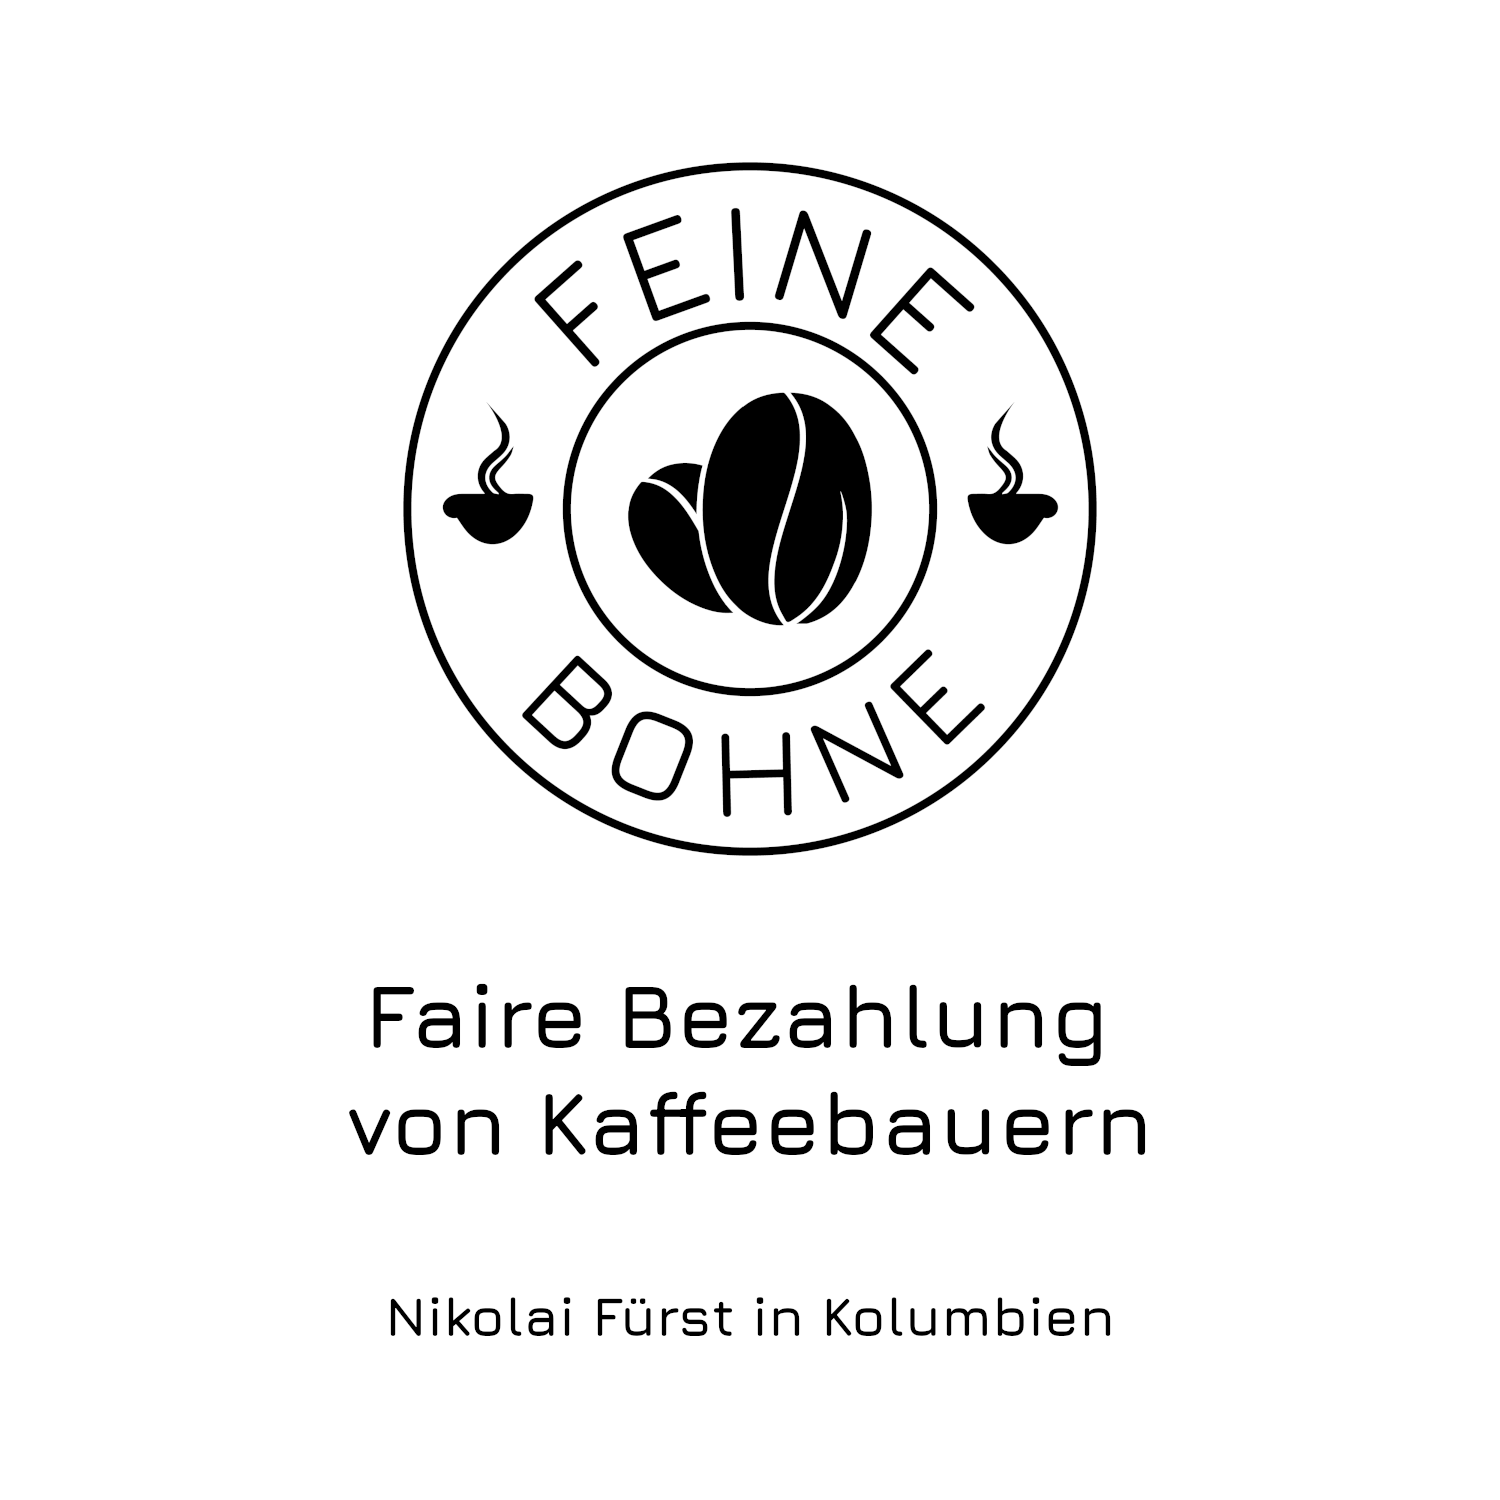 #15 Faire Bezahlung von Kaffeebauern | Nikolai Fürst in Kolumbien